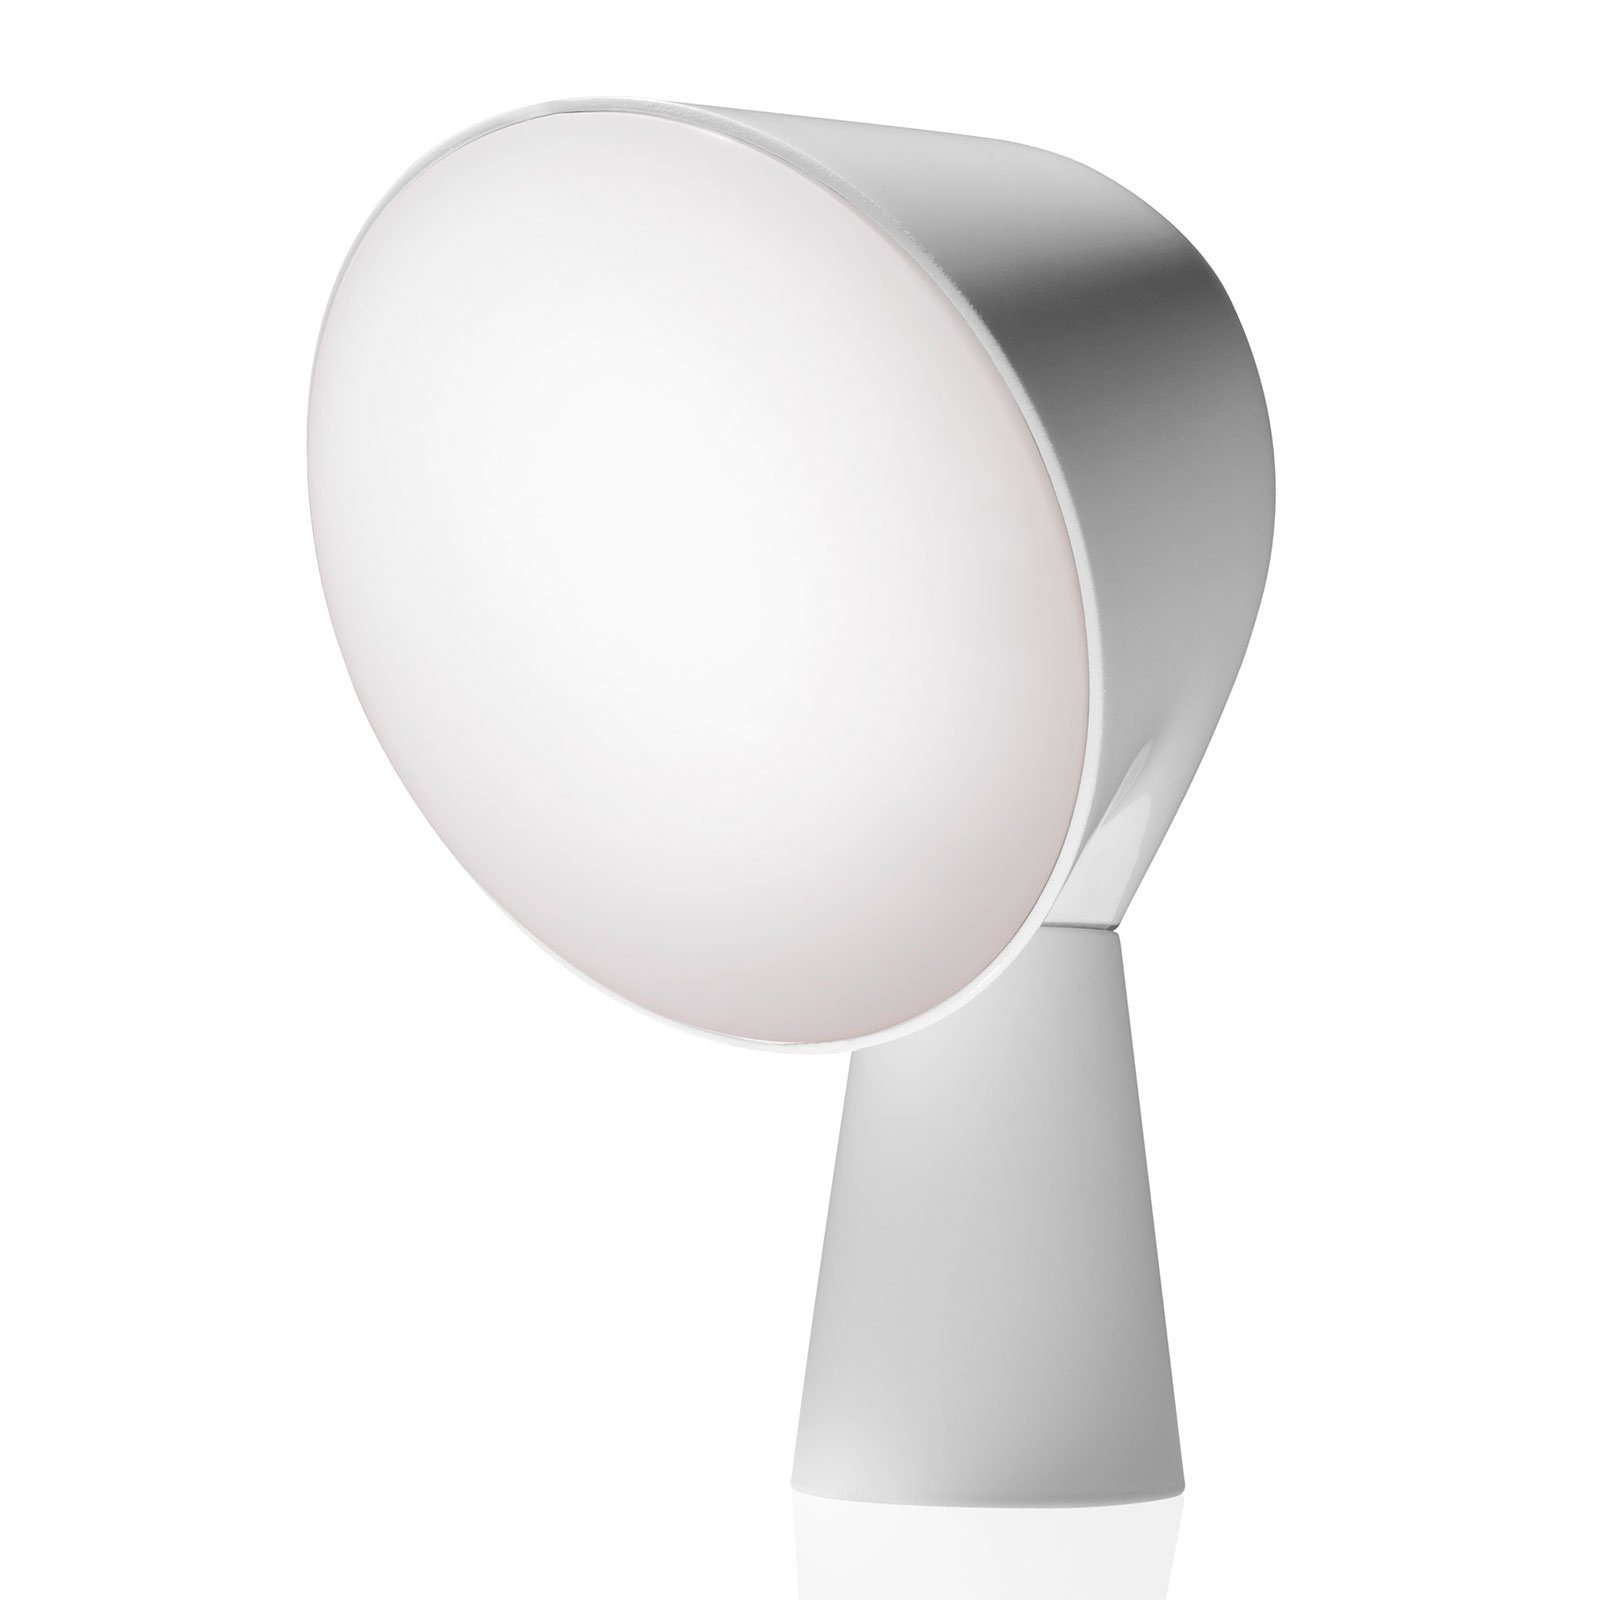 Foscarini Binic designer table lamp, white